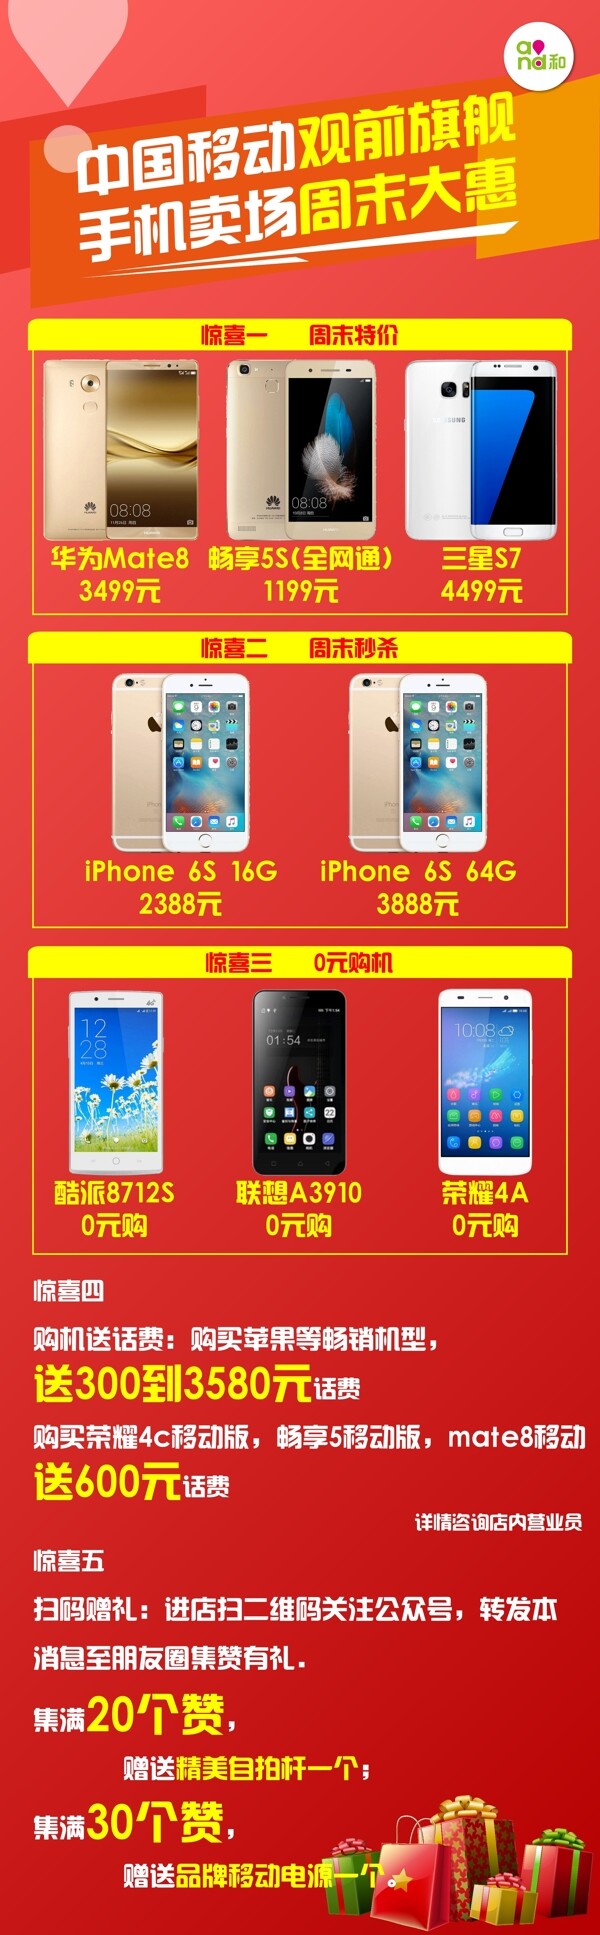 手机卖场周末大惠移动宣传单中国移动